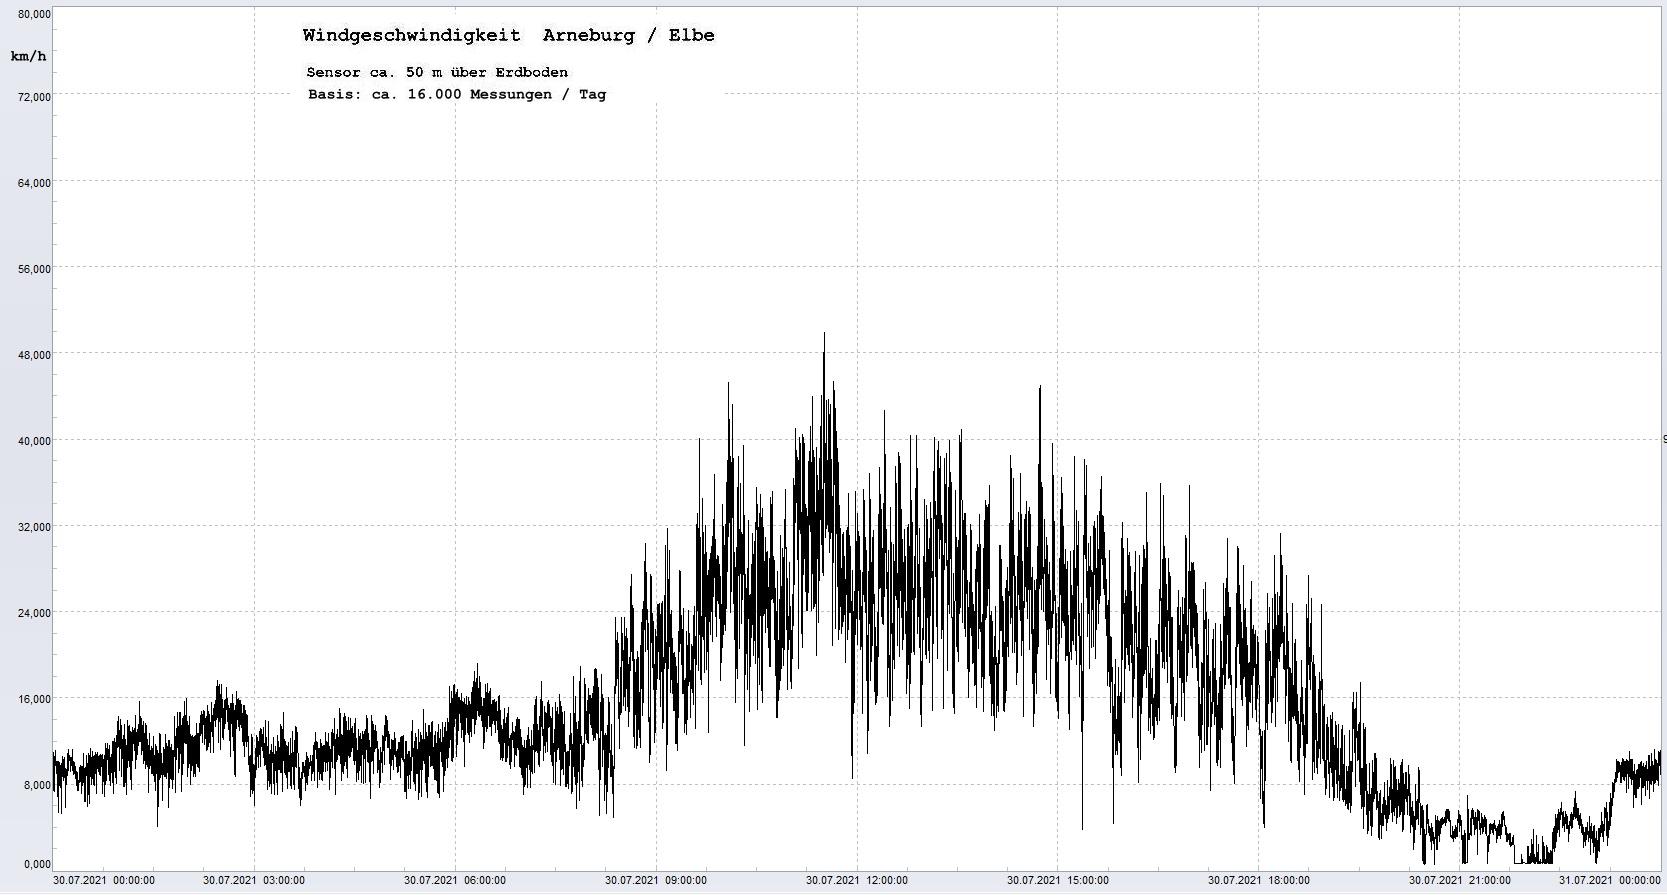 Arneburg Tages-Diagramm Winddaten, 30.07.2021
  Diagramm, Sensor auf Gebude, ca. 50 m ber Erdboden, Basis: 5s-Aufzeichnung